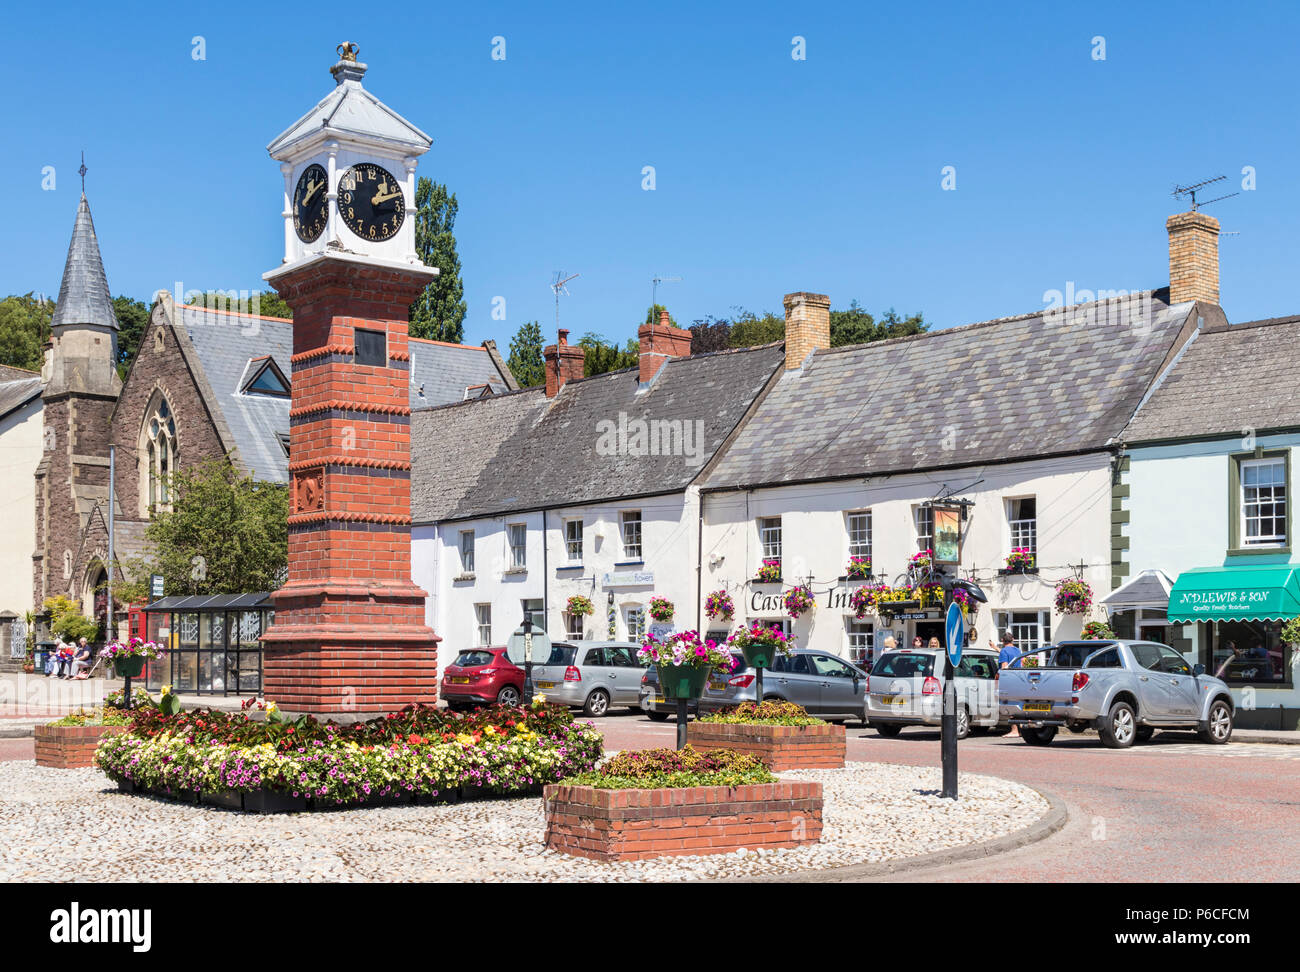 Nouvelle-galles du Sud La Nouvelle-Galles du sud de l''usk Twyn Square et tour de l'horloge victorienne Usk centre ville Monmouthshire South Wales Royaume-uni uk go europe Banque D'Images